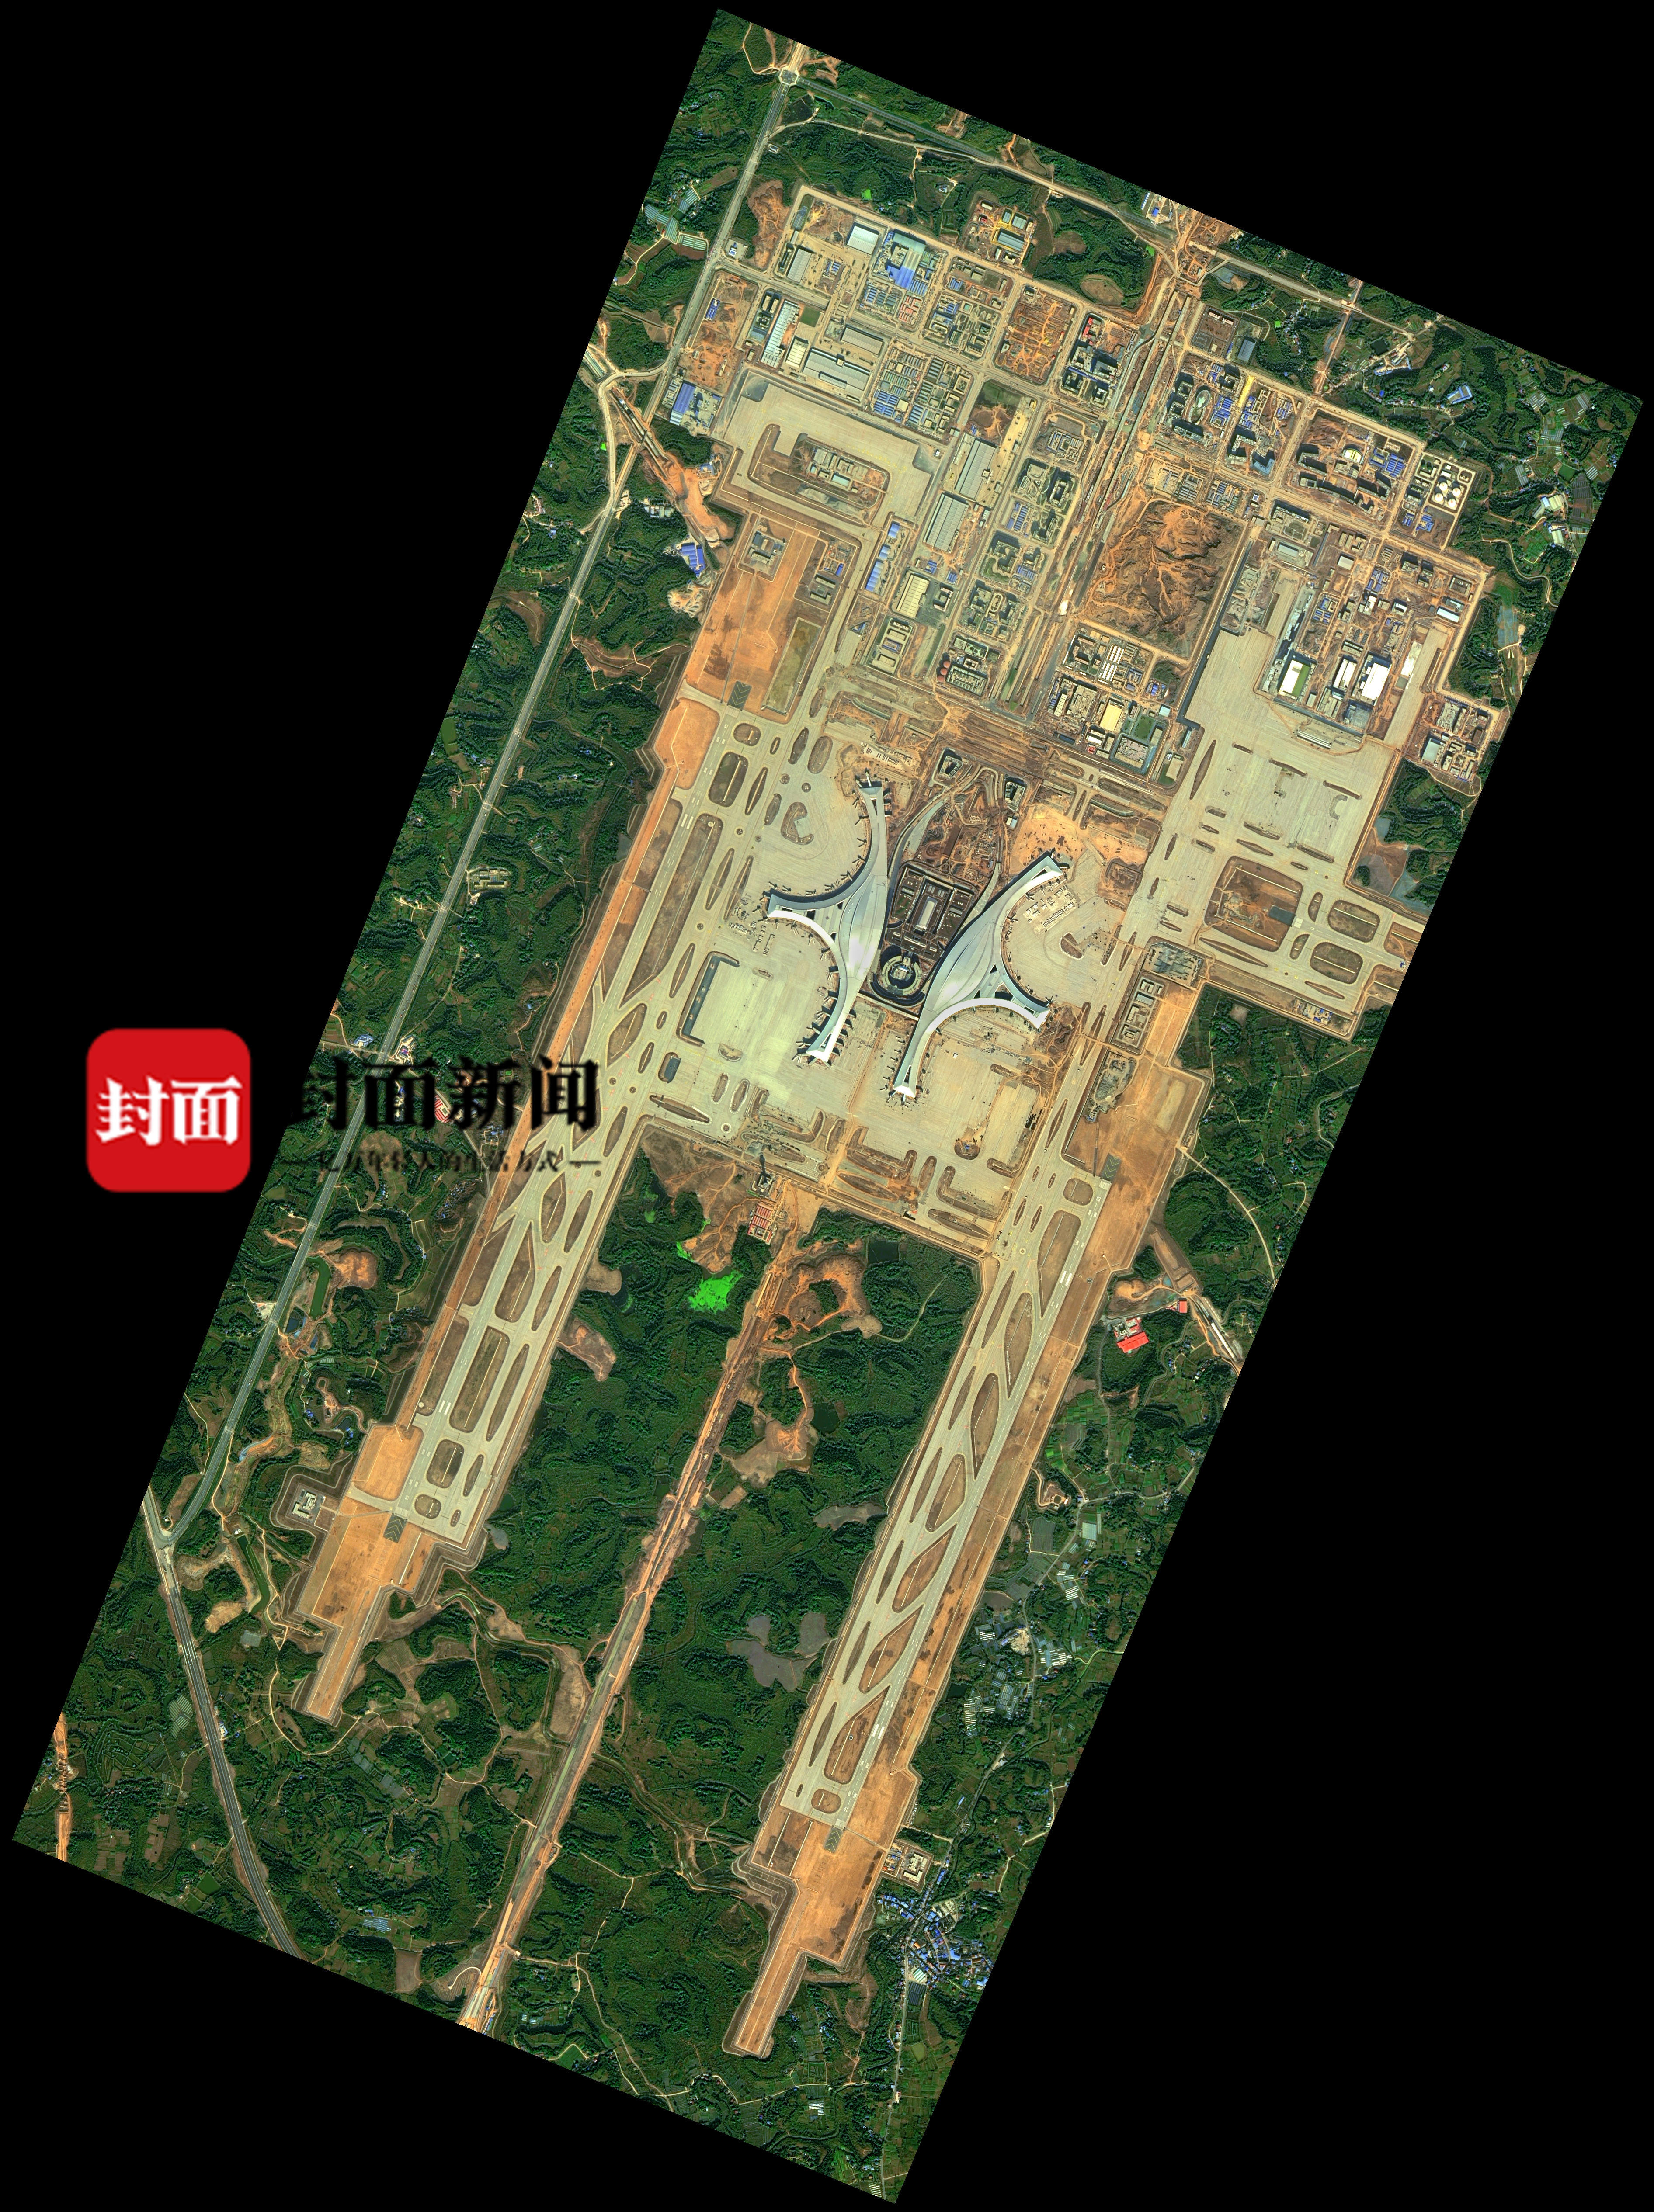 卫星俯瞰成都天府国际机场(拍摄时间:2020年11月)